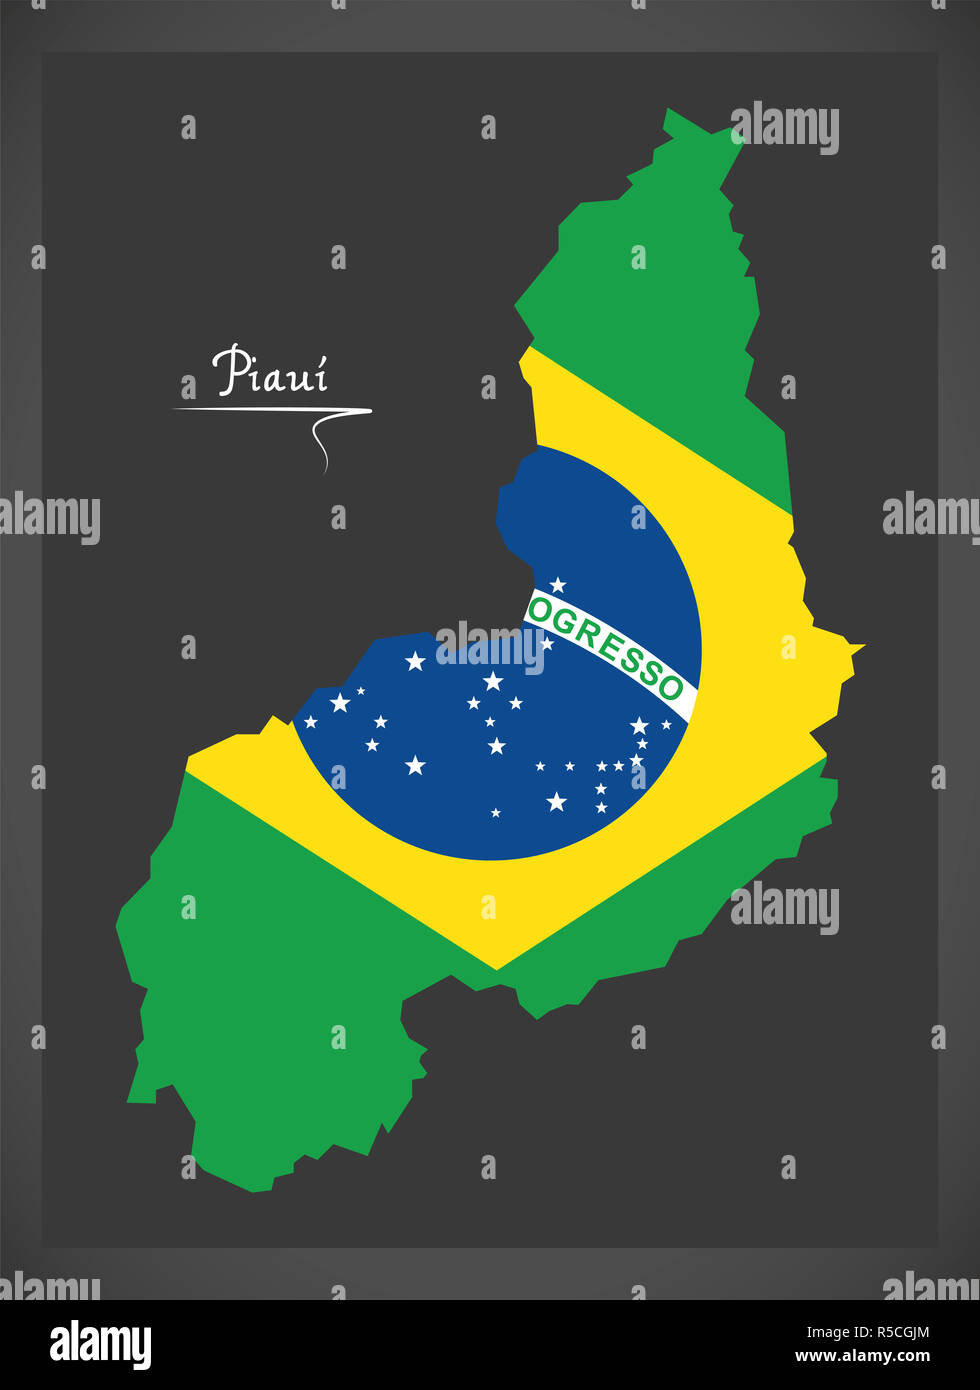 Piaui carte avec drapeau national brésilien illustration Banque D'Images